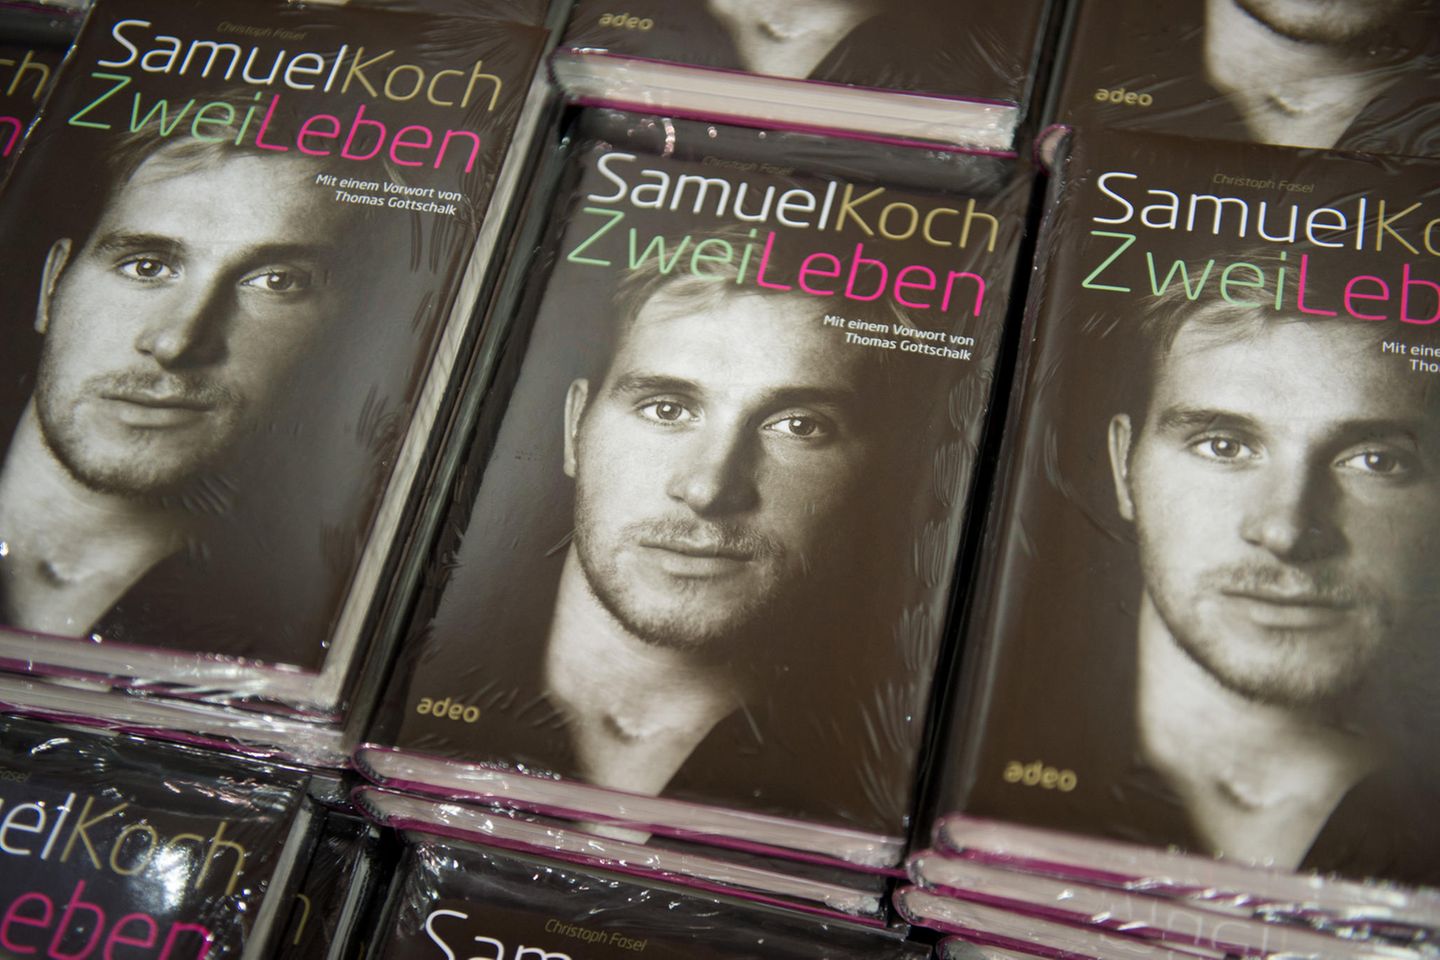 Samuel Koch veröffentlicht seine Biographie.